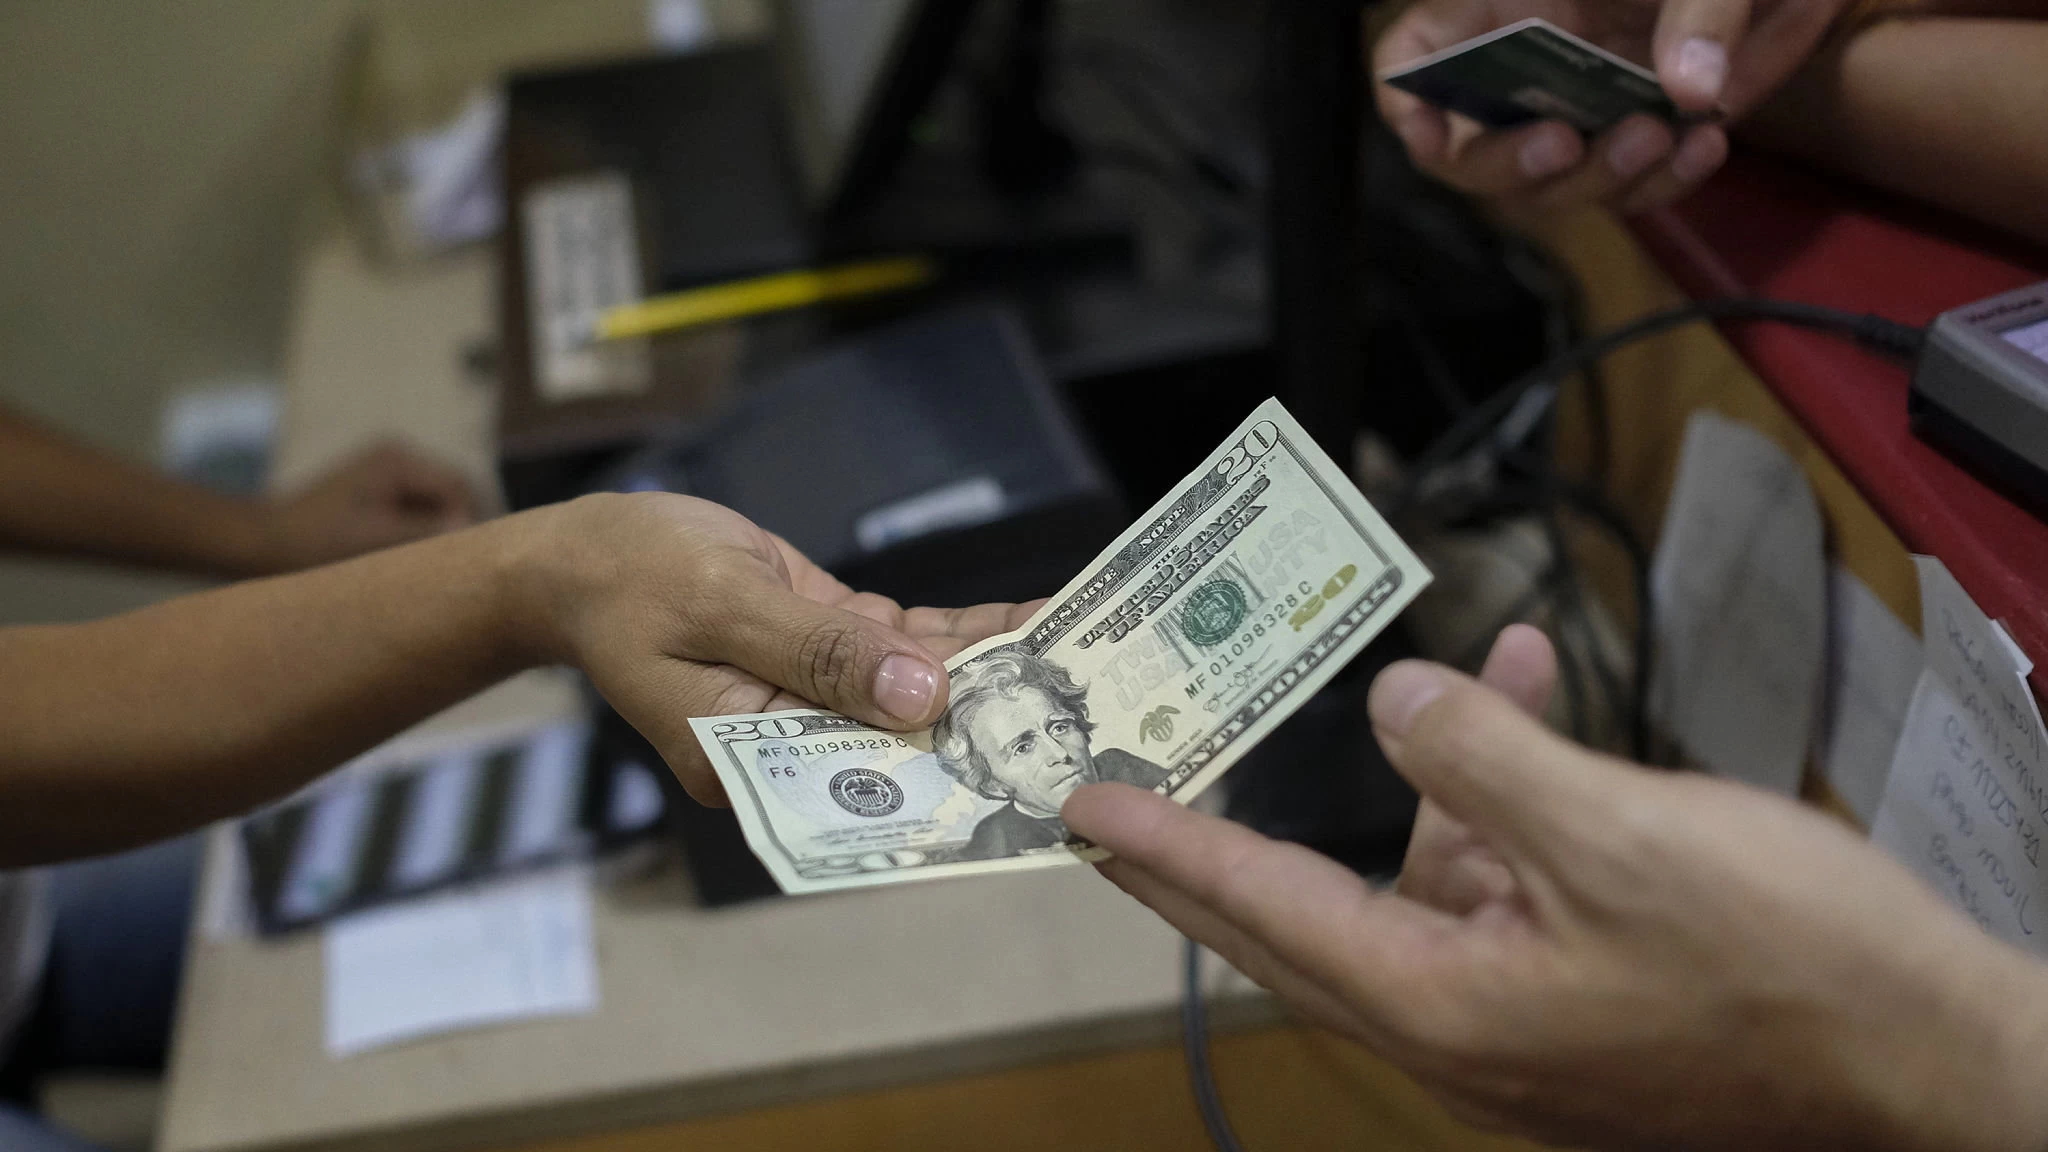 نظام دفع جديد لمنظومات العملات الأجنبية في سوريا